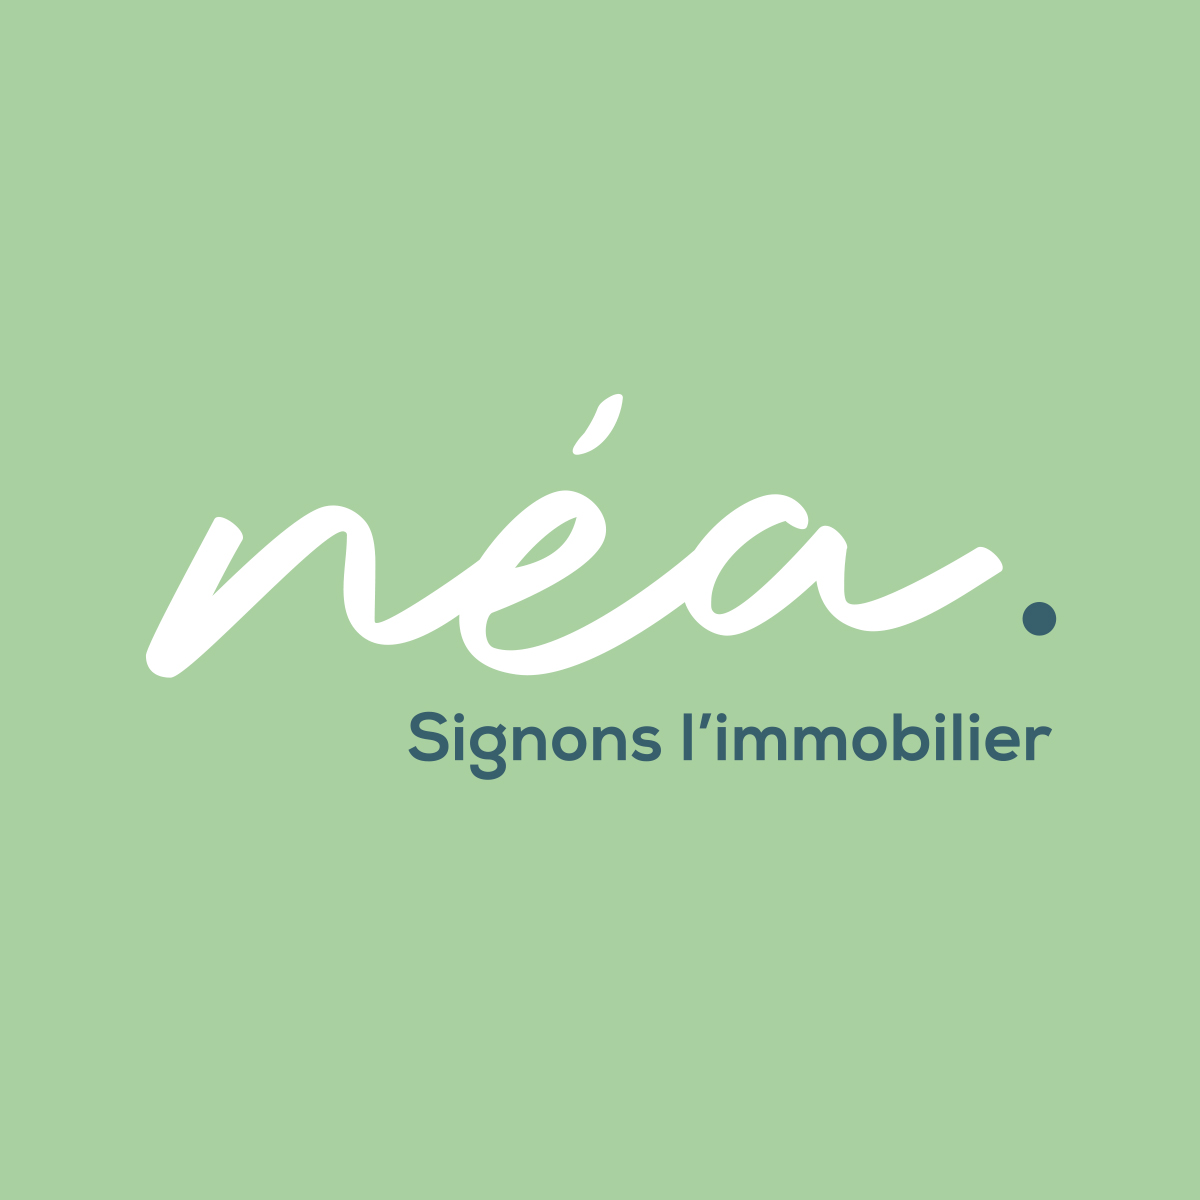 Identité visuelle // Nouvelle semaine, nouvelle création. ✍️

Notre équipe de graphistes vient de livrer logo sur mesure pour une nouvelle agence immobilière dans la région de Montpellier 📍🗝

#logo #identitevisuelle #naming #communication #immobilier #montpellier